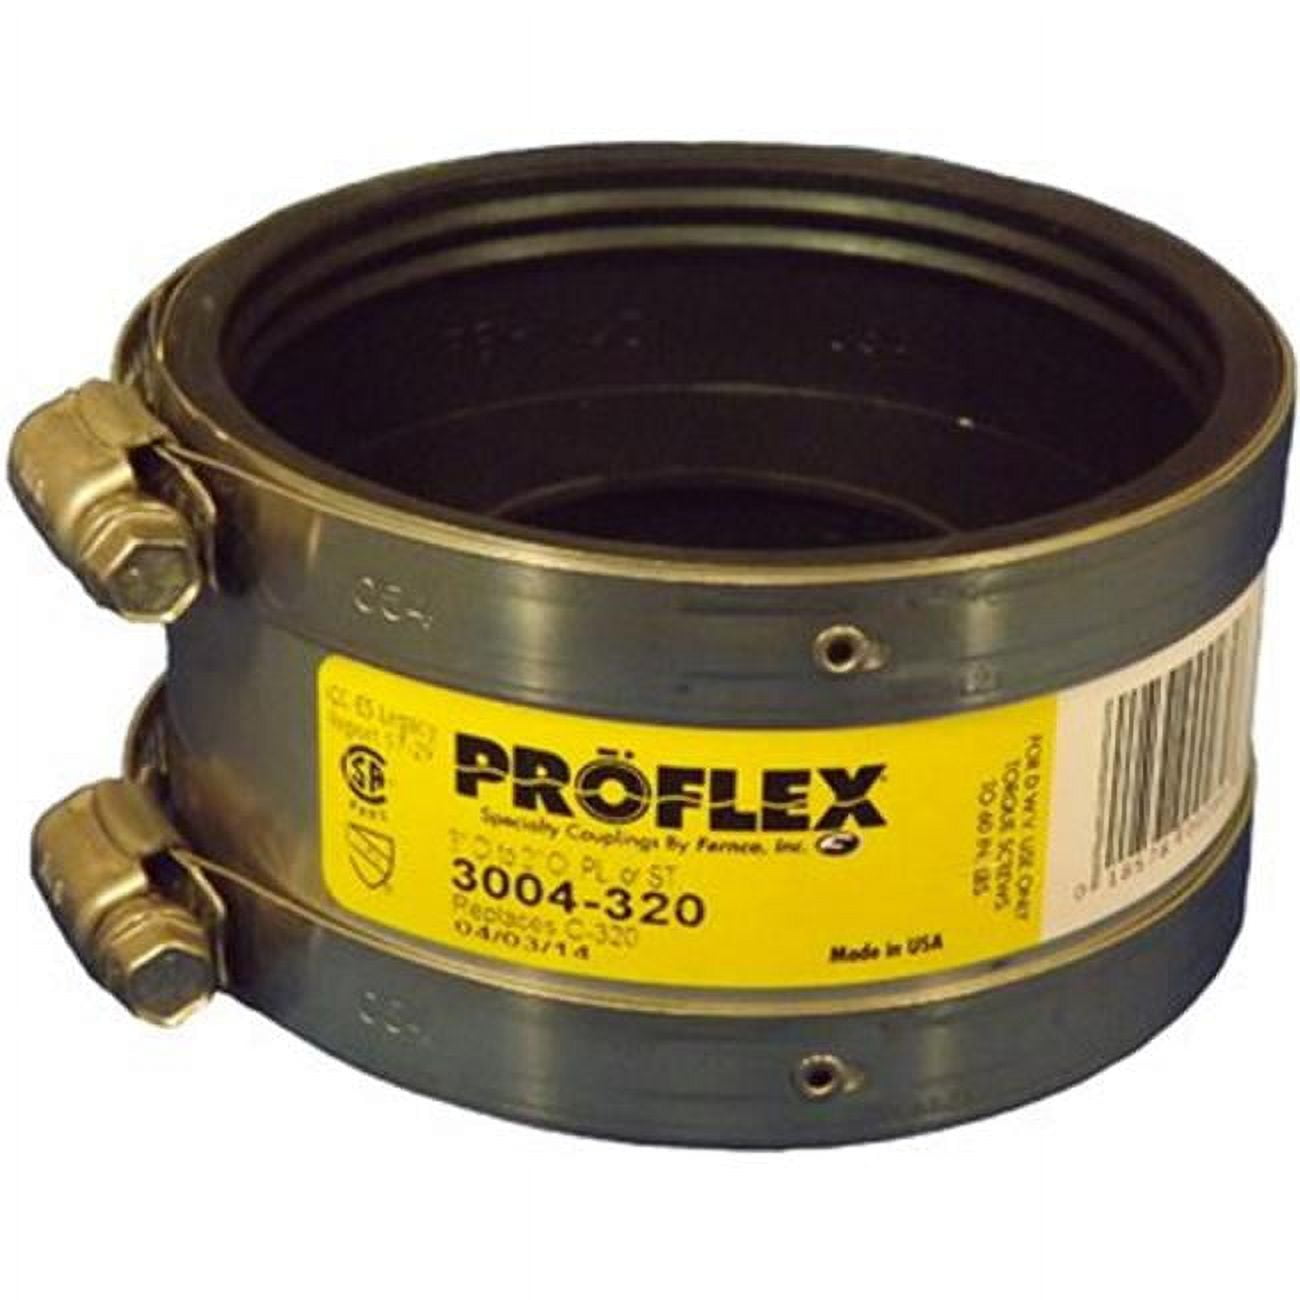 3004-320 3 X 2 In. Proflex Steel Shielded Coupling